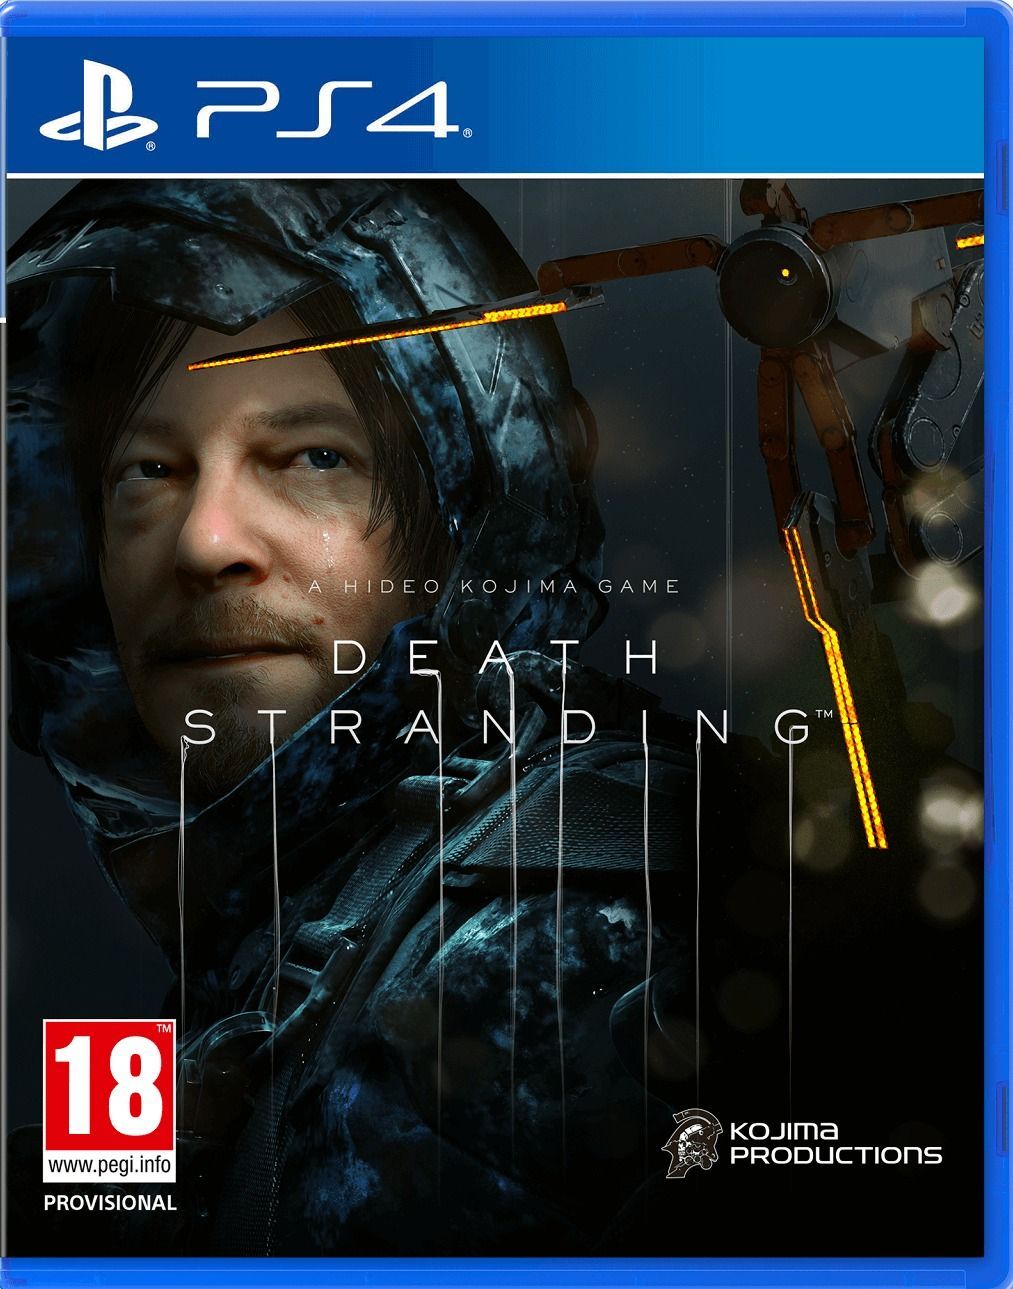 Death Stranding Videojuego (PS4 y PC) - Vandal